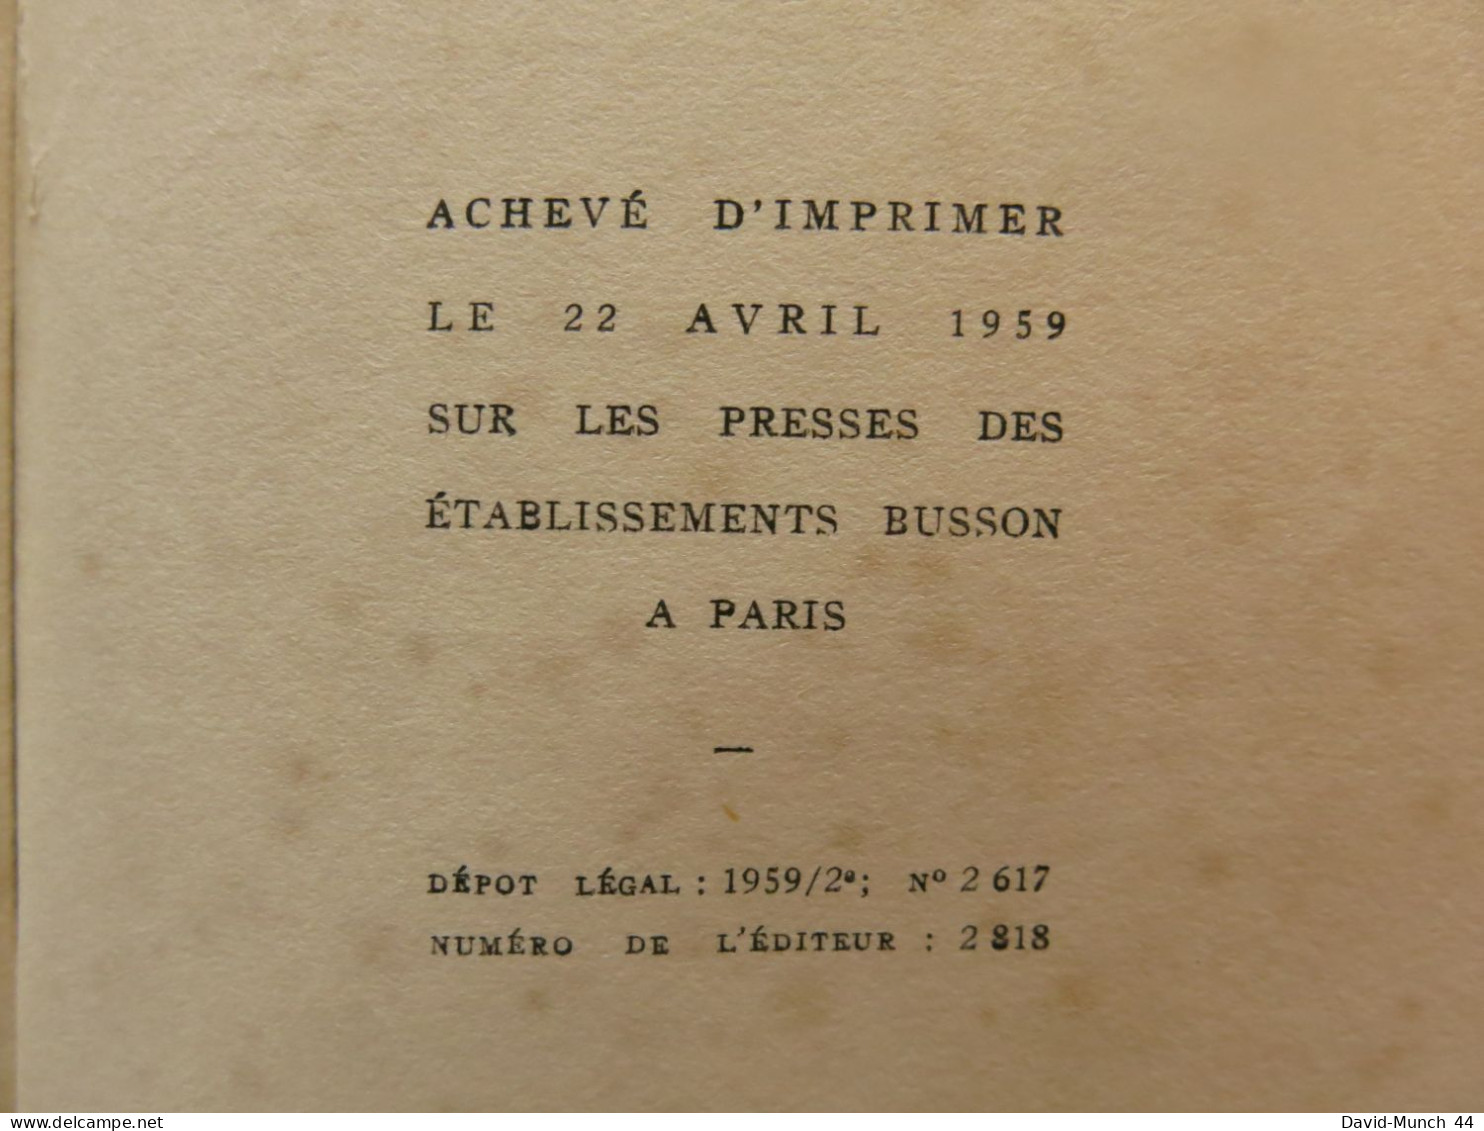 Flamarens de Pierre Benoît. Editions Albin Michel, Paris. 1959